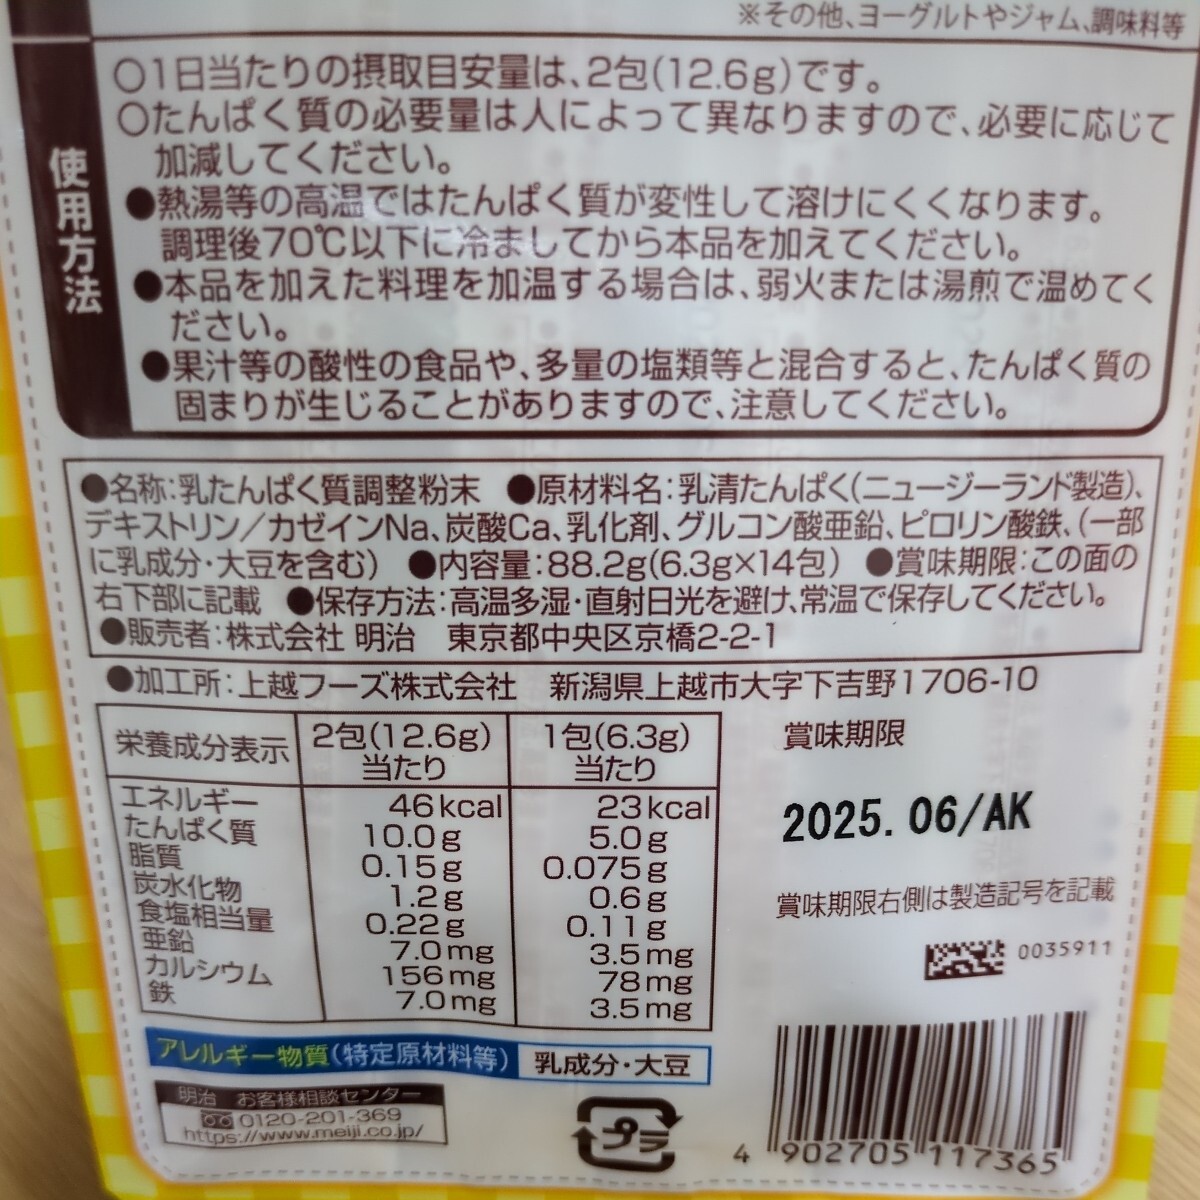  Meiji mei протеин белок дополнительное питание товар (6.3g×14.)×2 пакет . Kiyoshi белок использование 